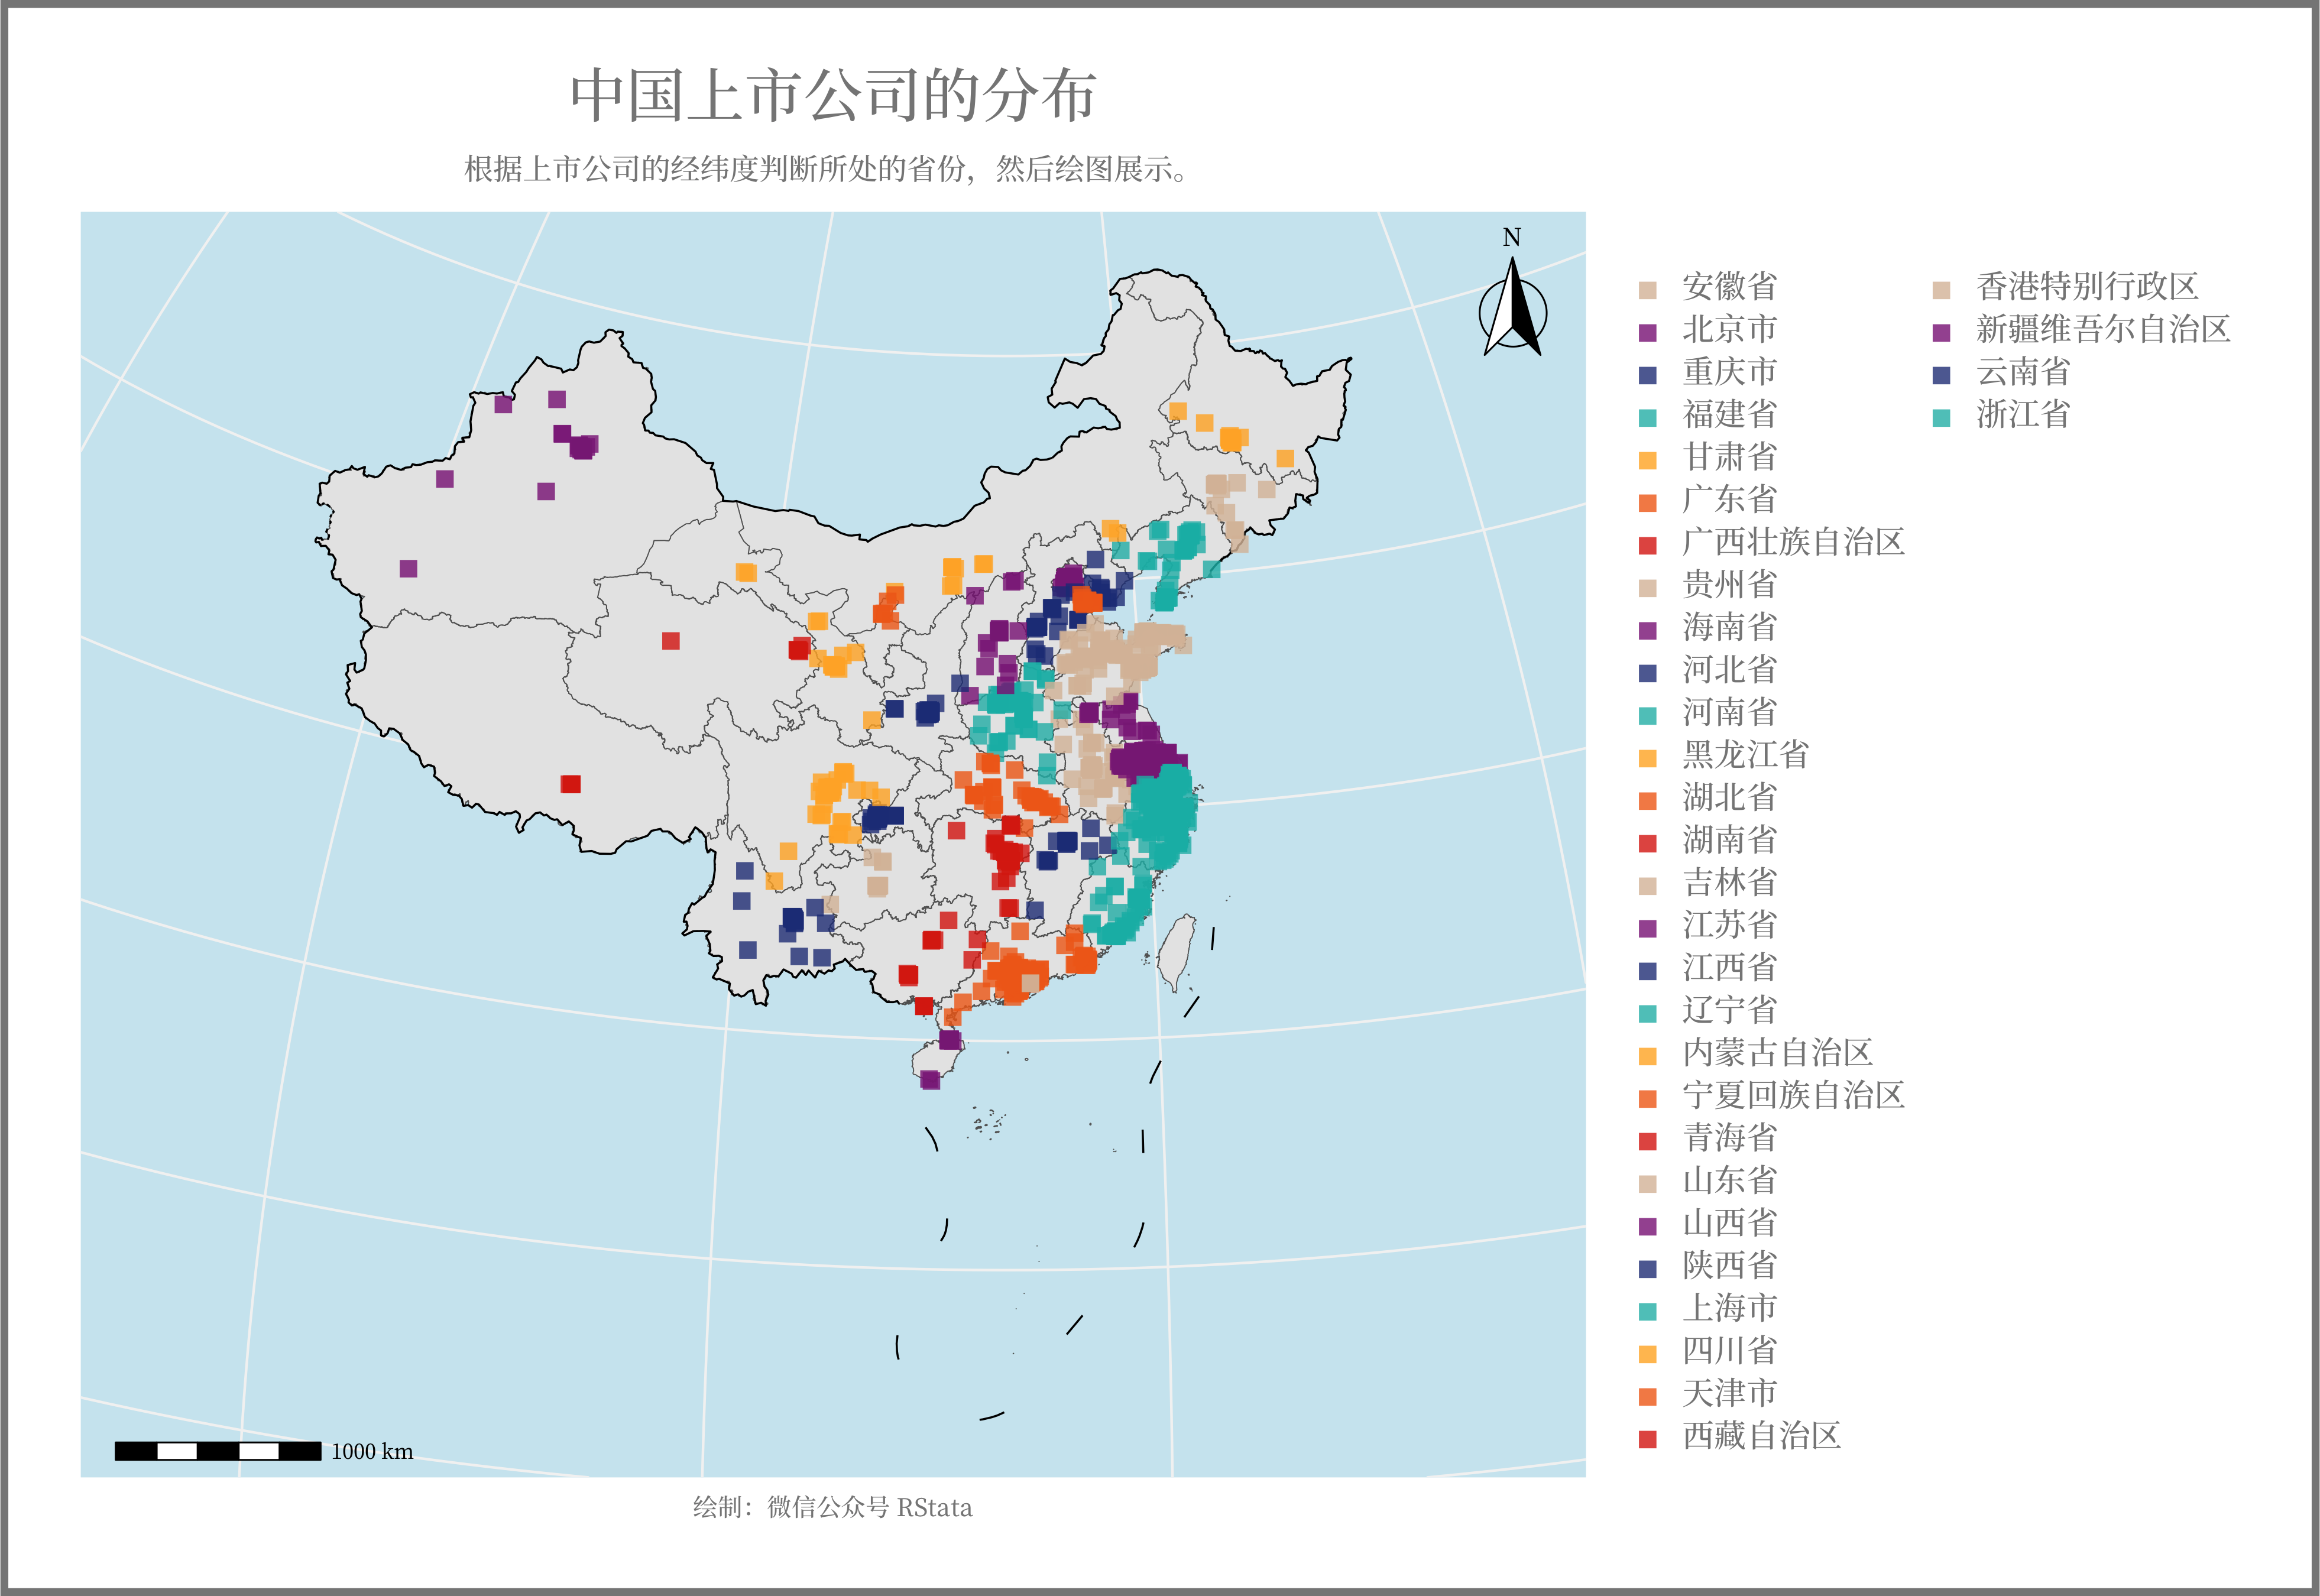 中国上市公司的地理分布